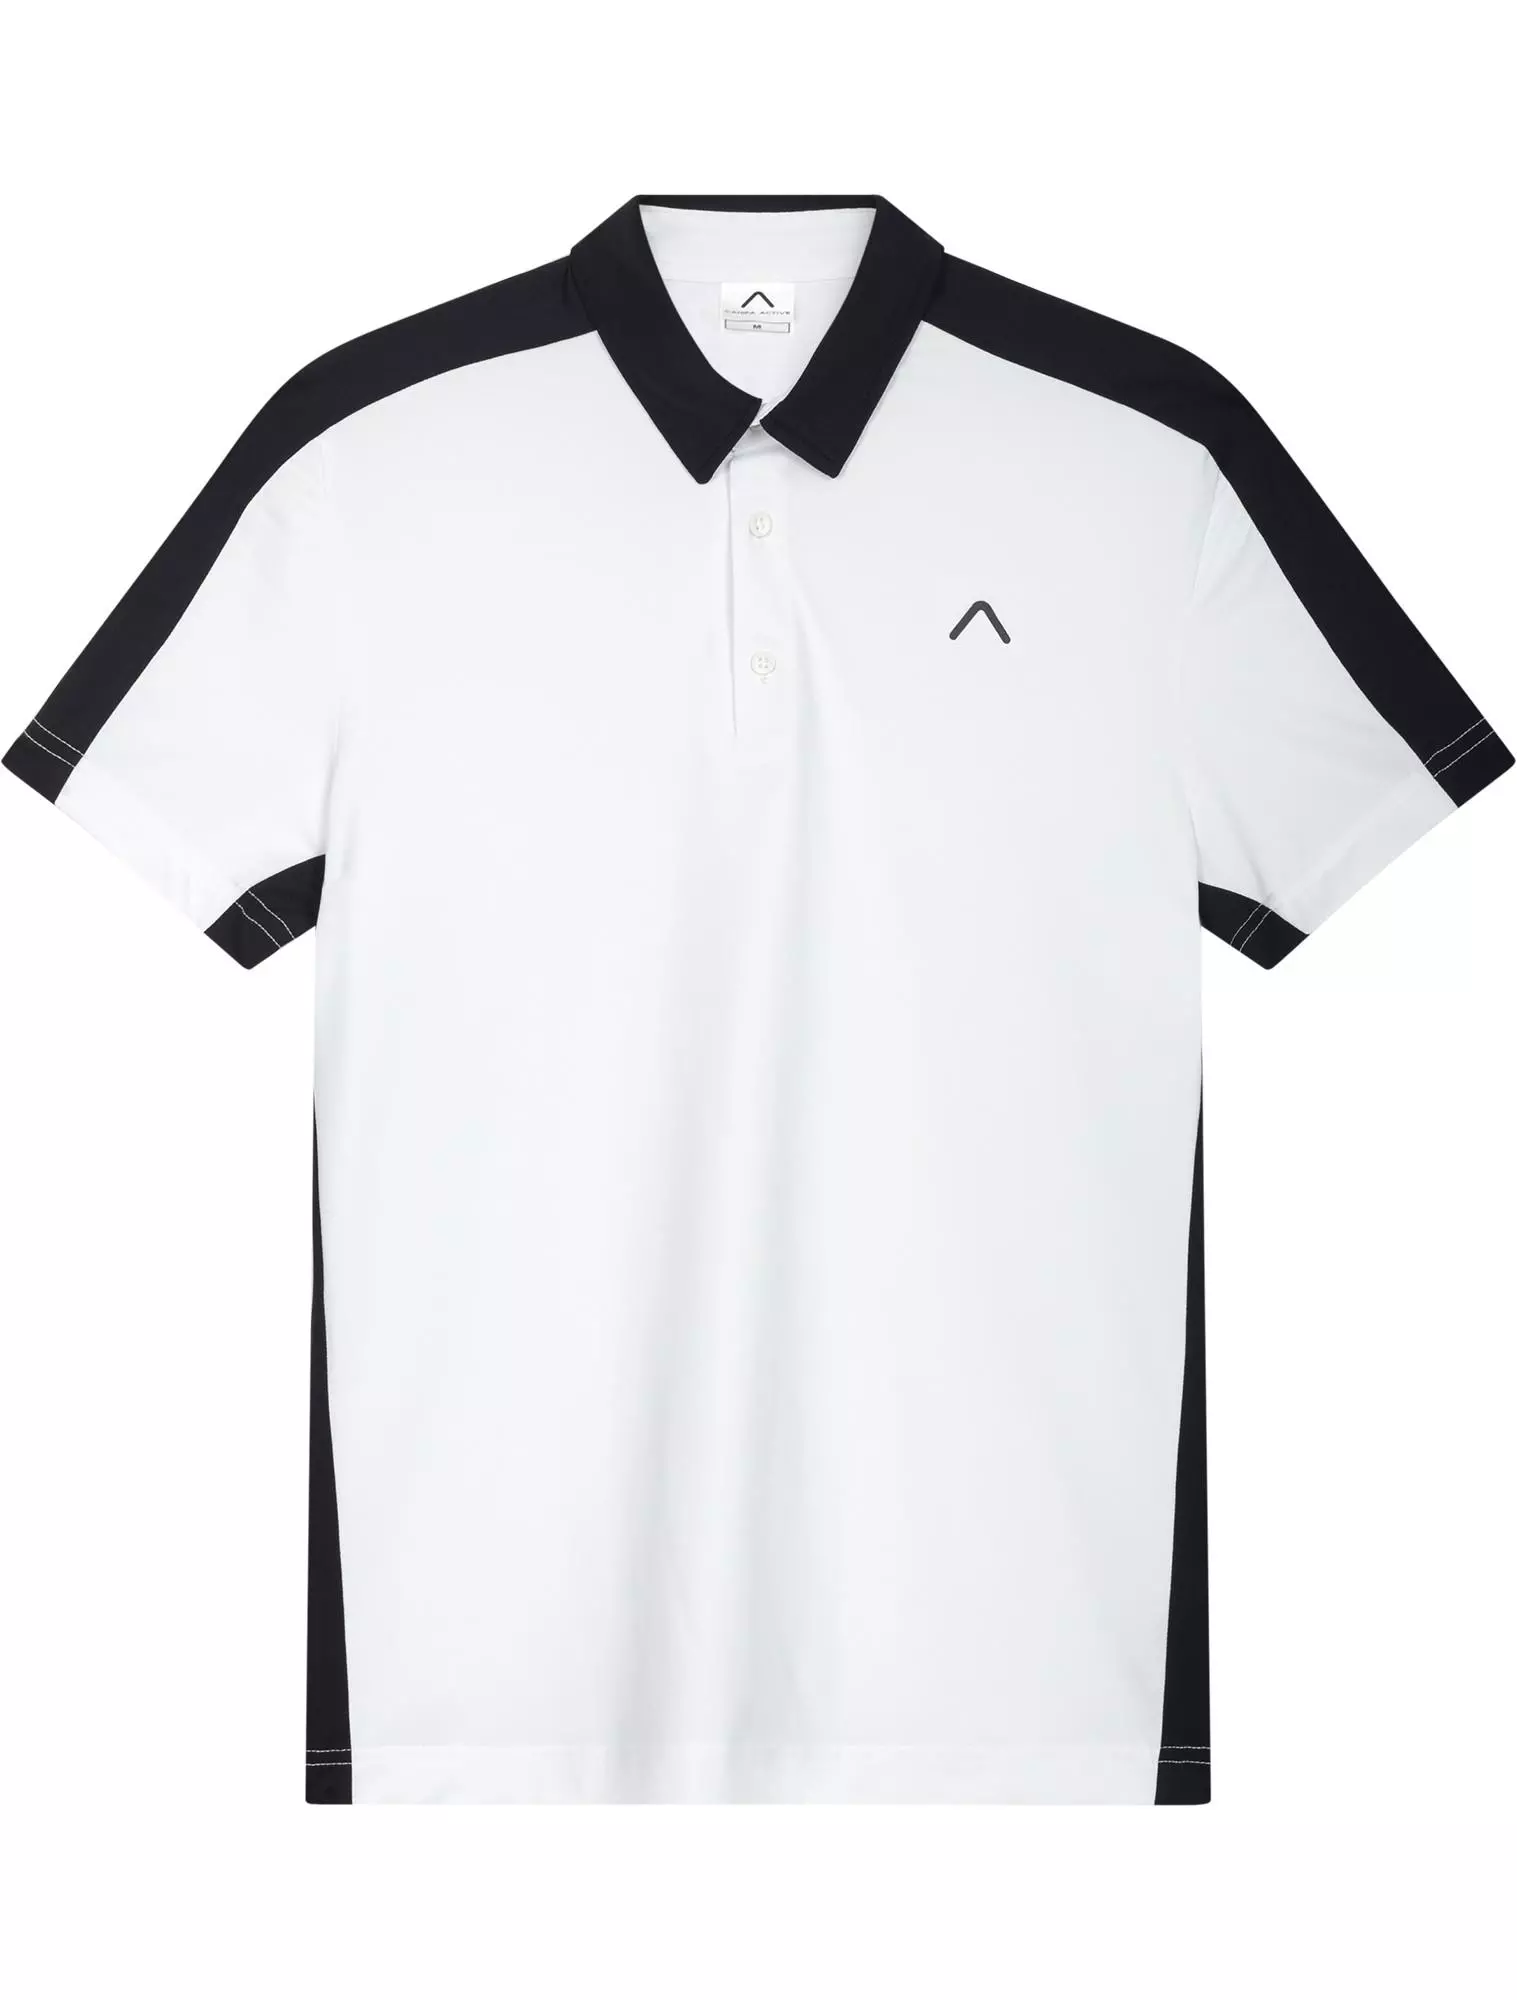 Men&#8217;s Polyester Tennis Polo Shirt Bangladesh Made